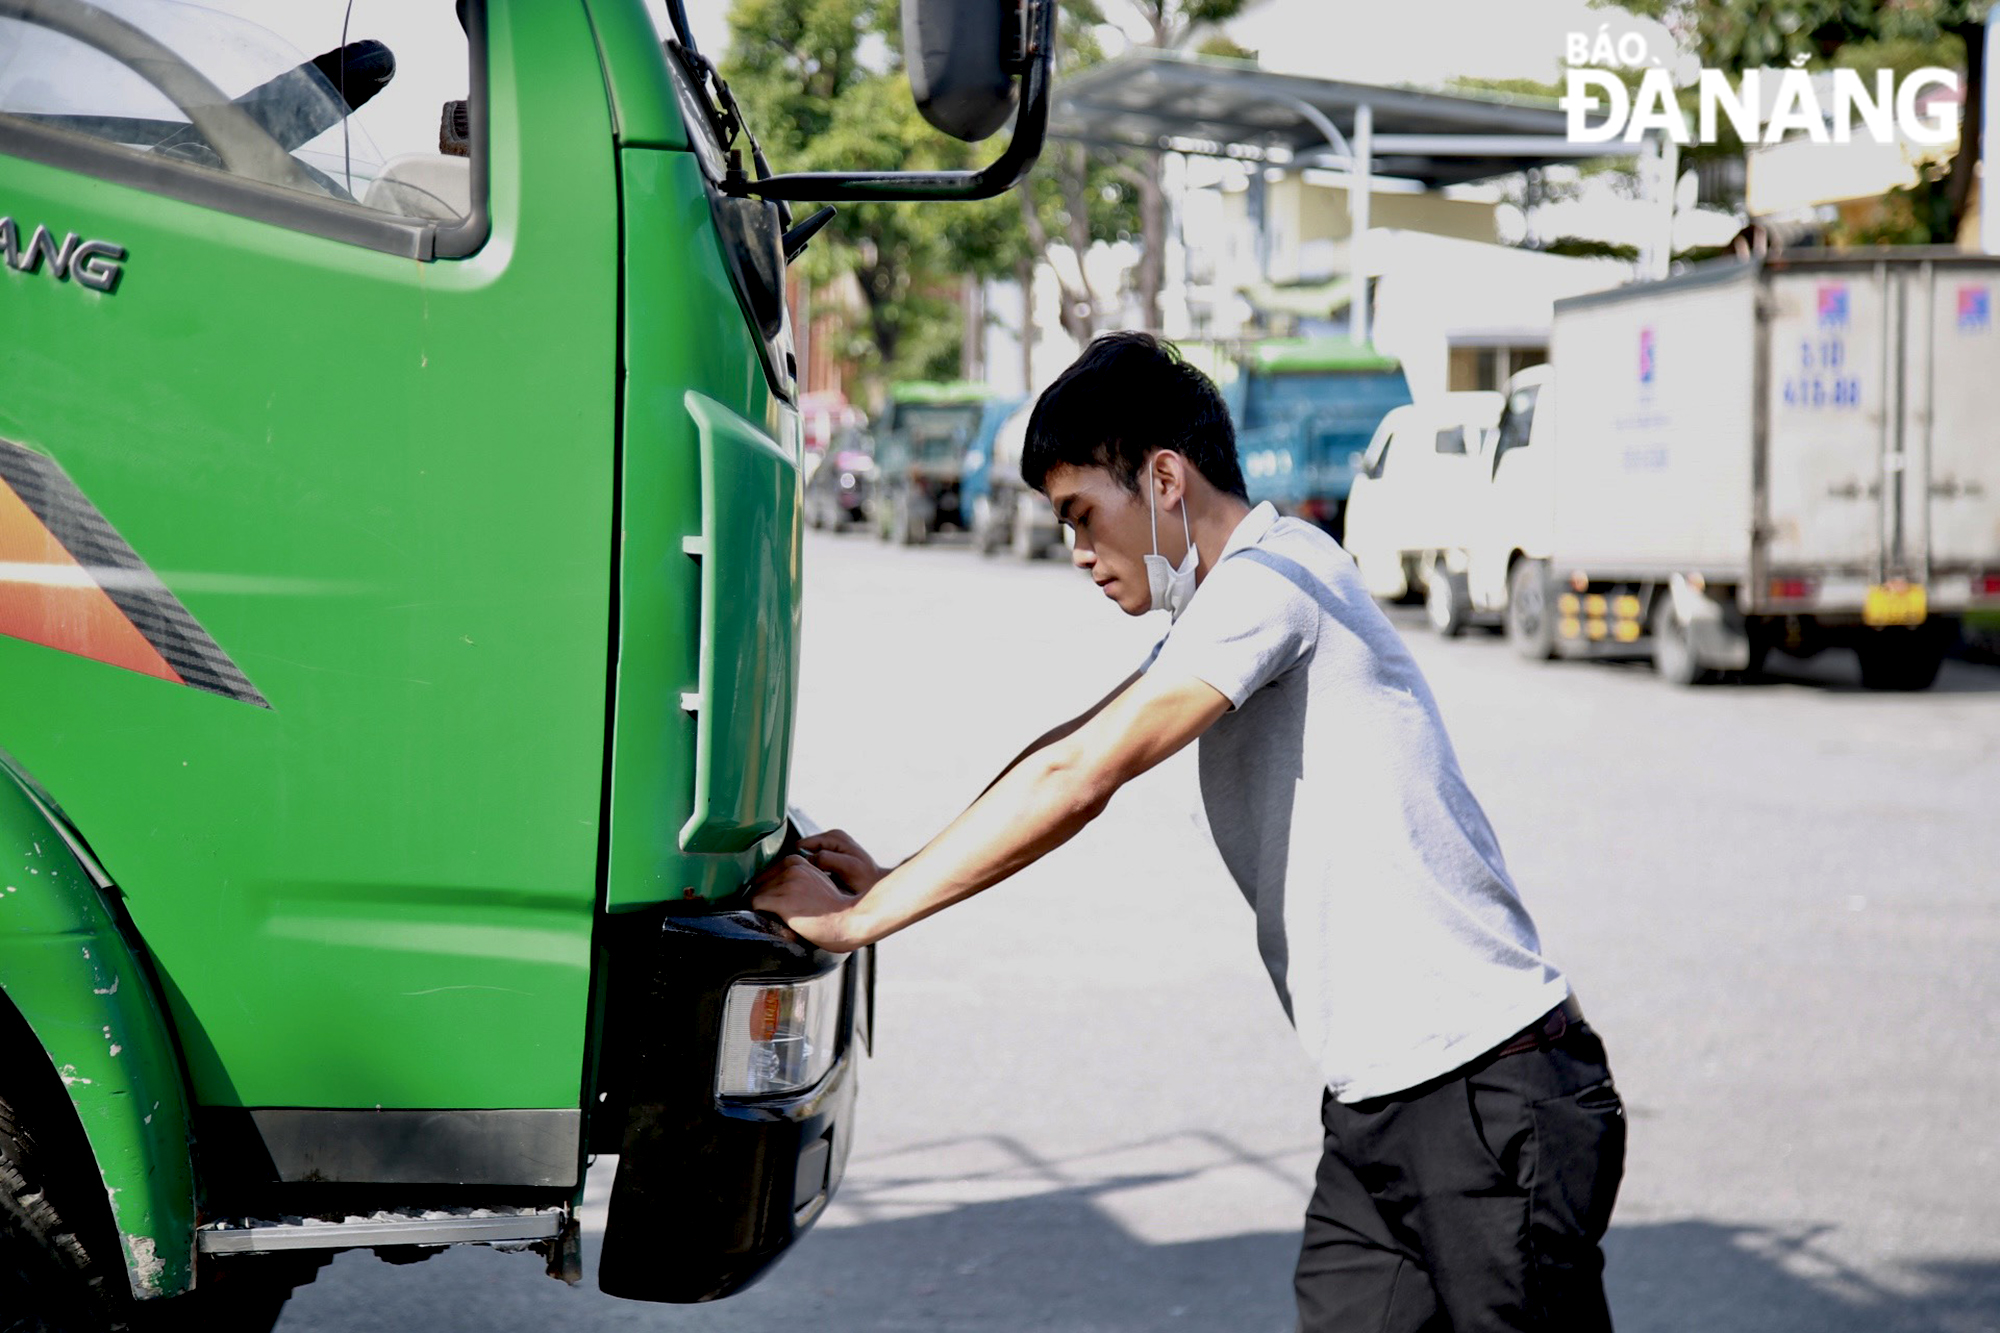 Nhiên viên kỹ thuật dịch vụ tại Trung tâm đăng kiểm xe cơ giới, cơ sở 1-43.01S (phường Hòa Minh, quận Liên Chiểu) đang kiểm tra sơ bộ cho xe trước khi đăng kiểm trong sáng 10-2. Ảnh: VĂN HOÀNG